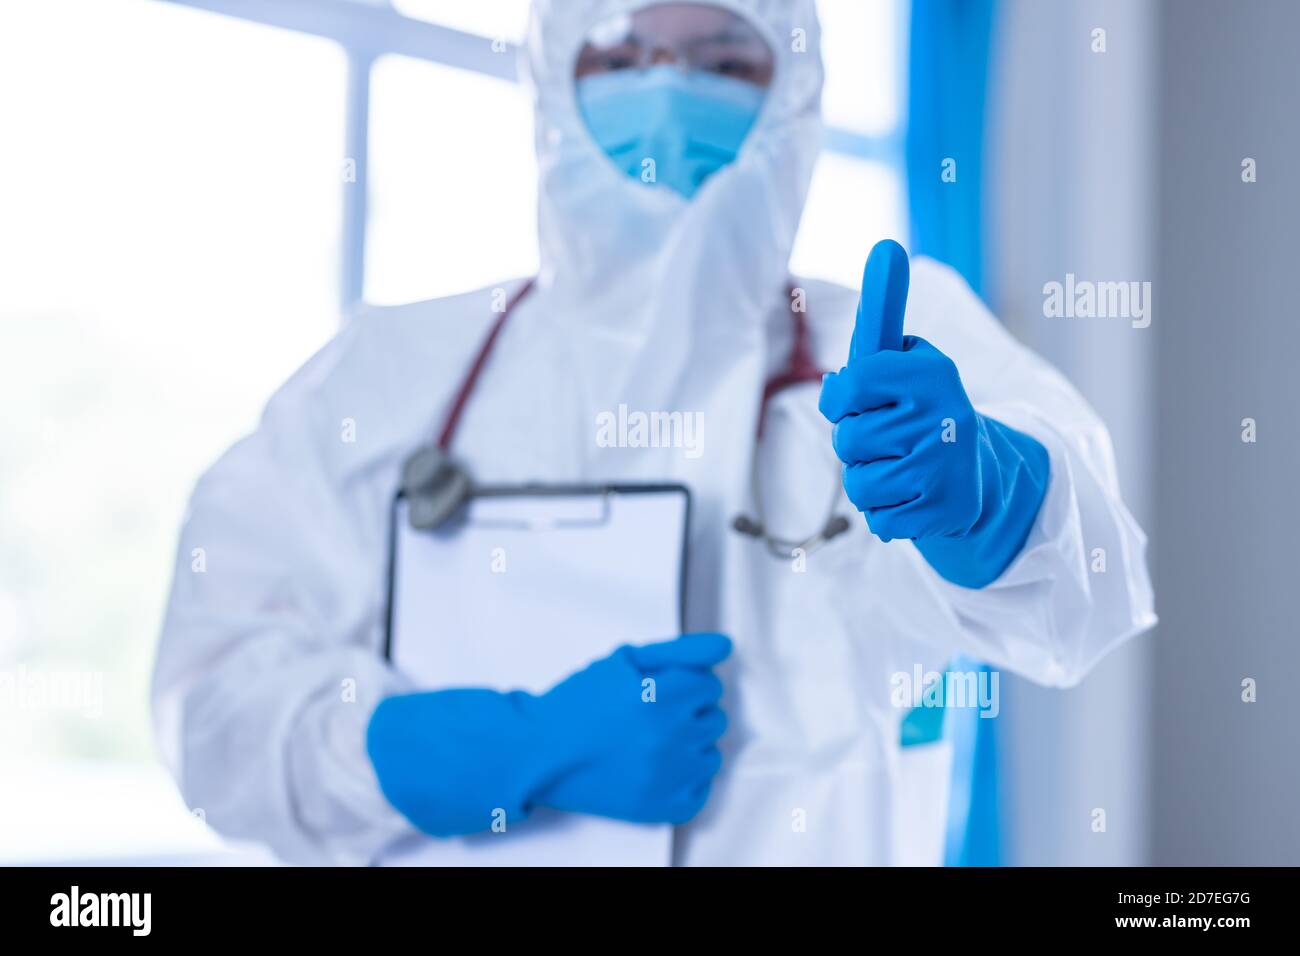 El médico usa PPE y pulgares para asegurar la prevención De la propagación de la enfermedad de coronavirus o brote de COVID-19 Foto de stock